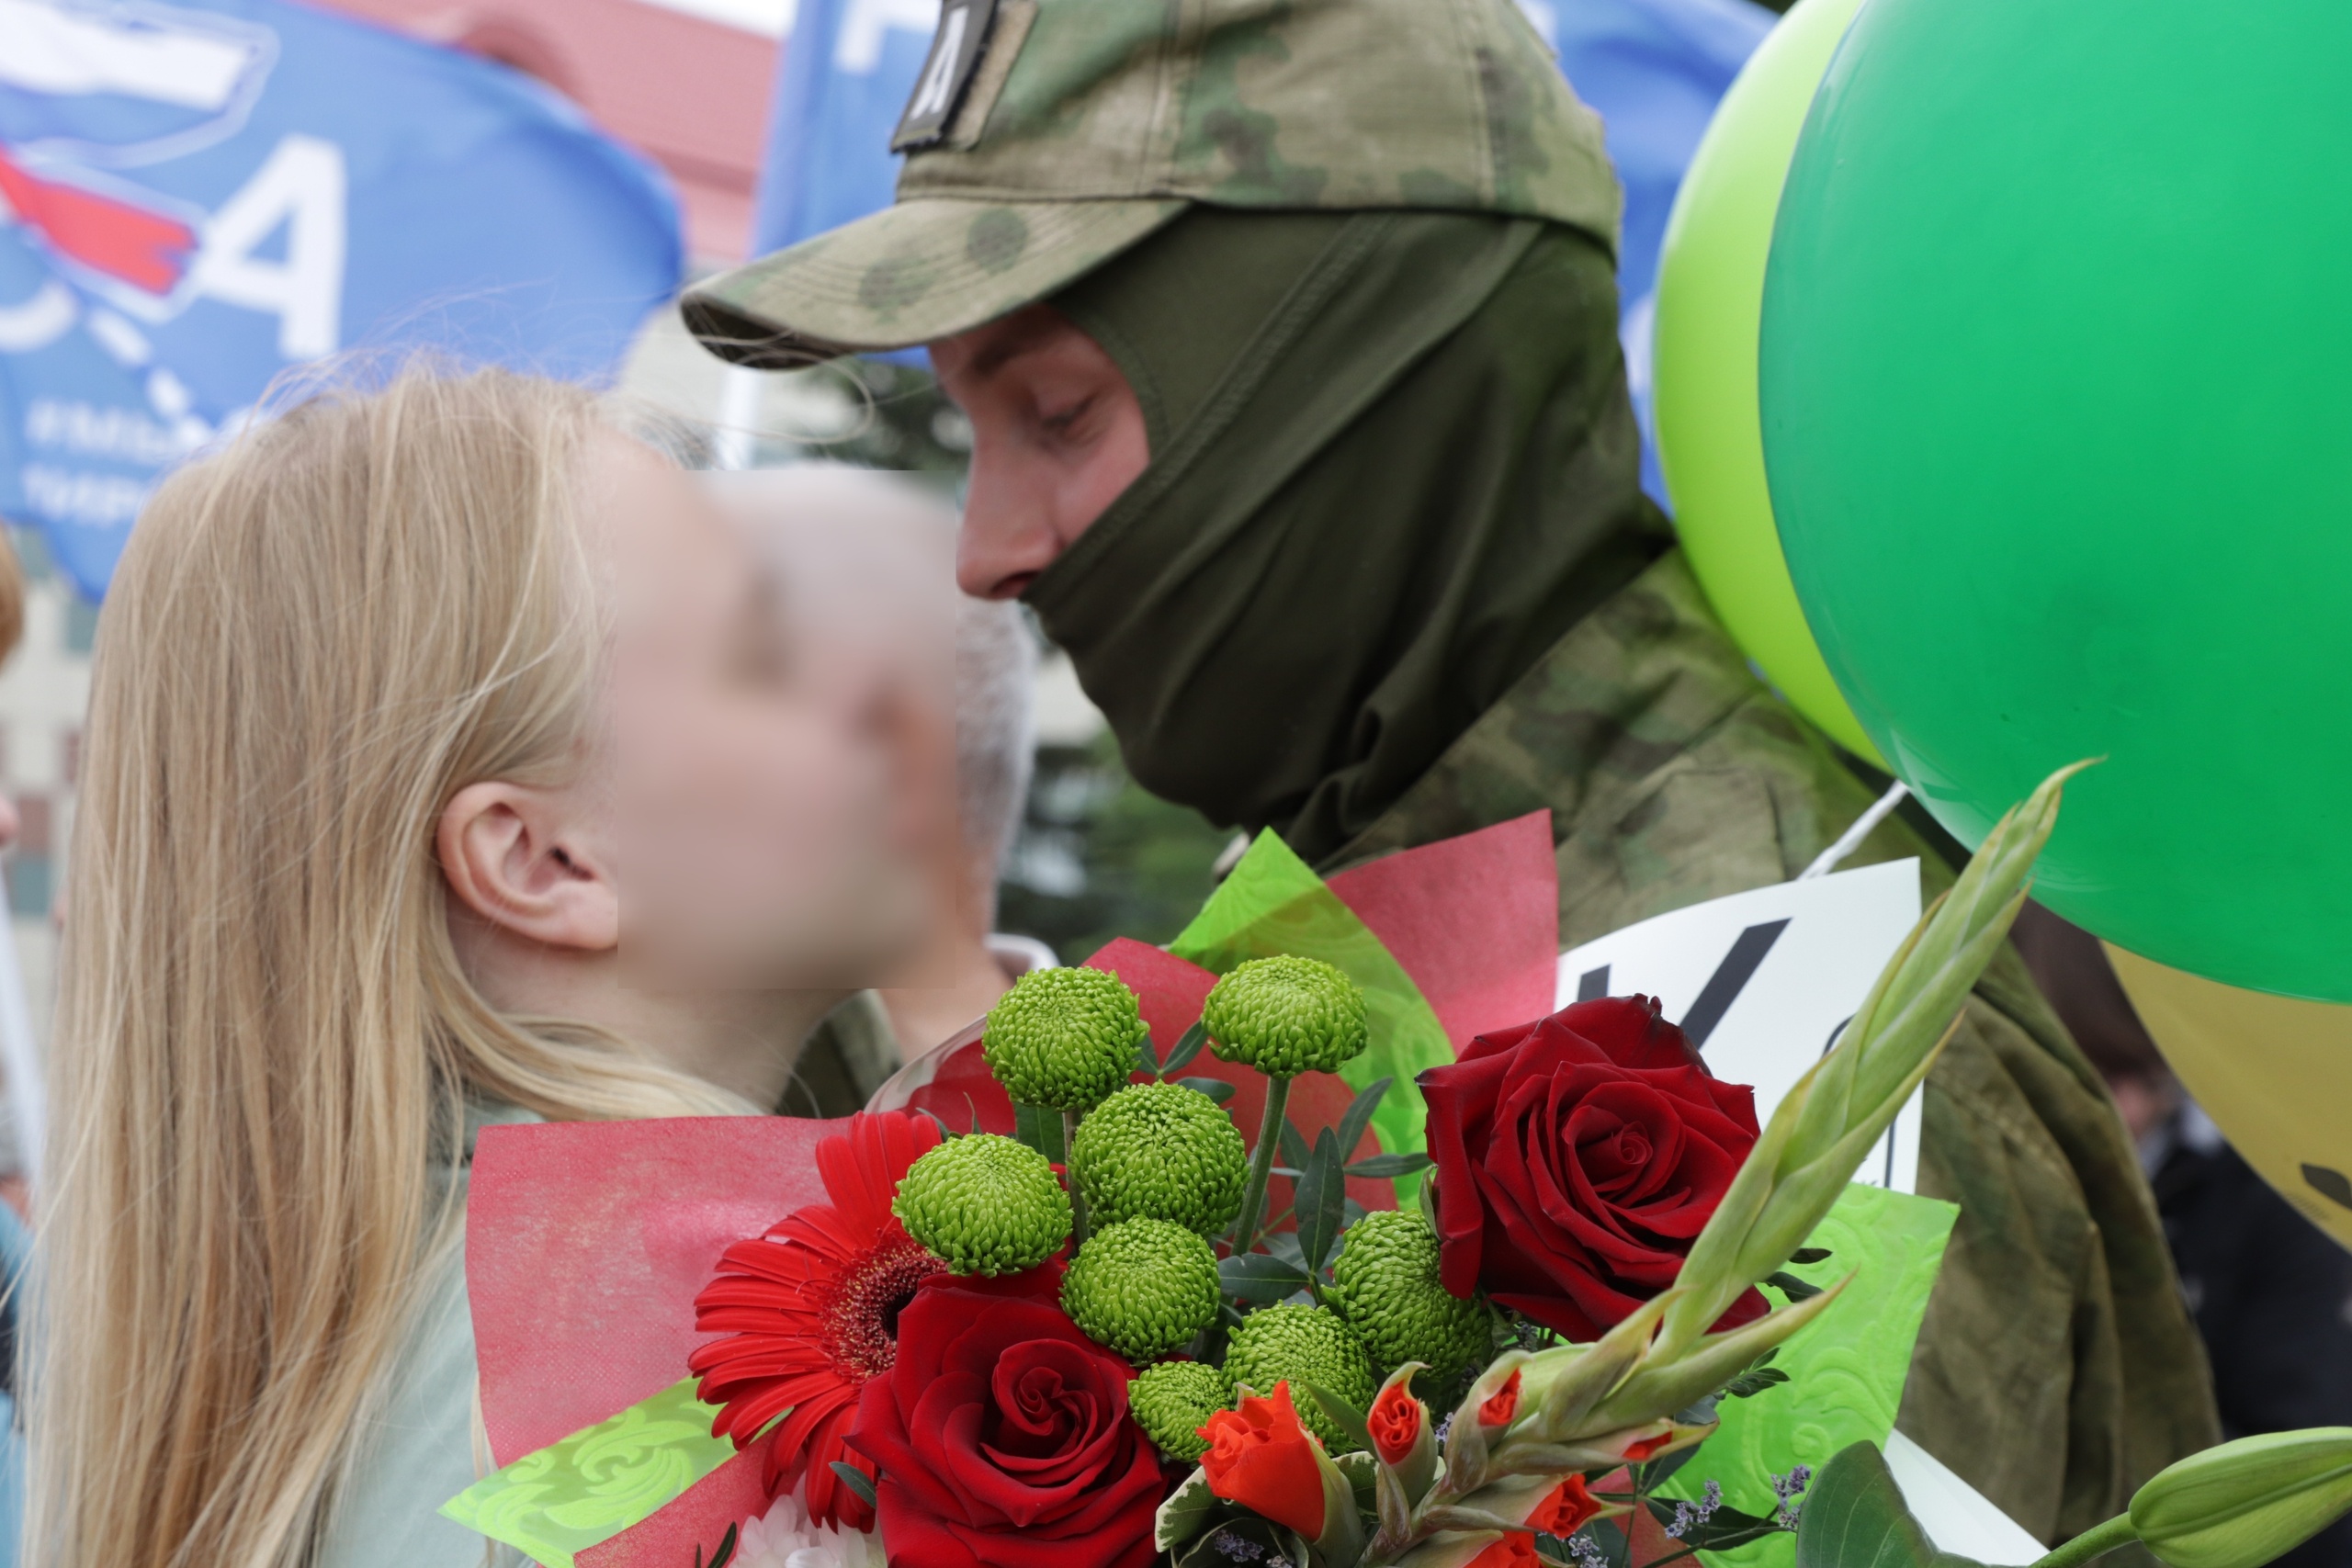 Для близких военнослужащих этот момент особенно трогательный — они ждали и верили, что увидят своих любимых снова